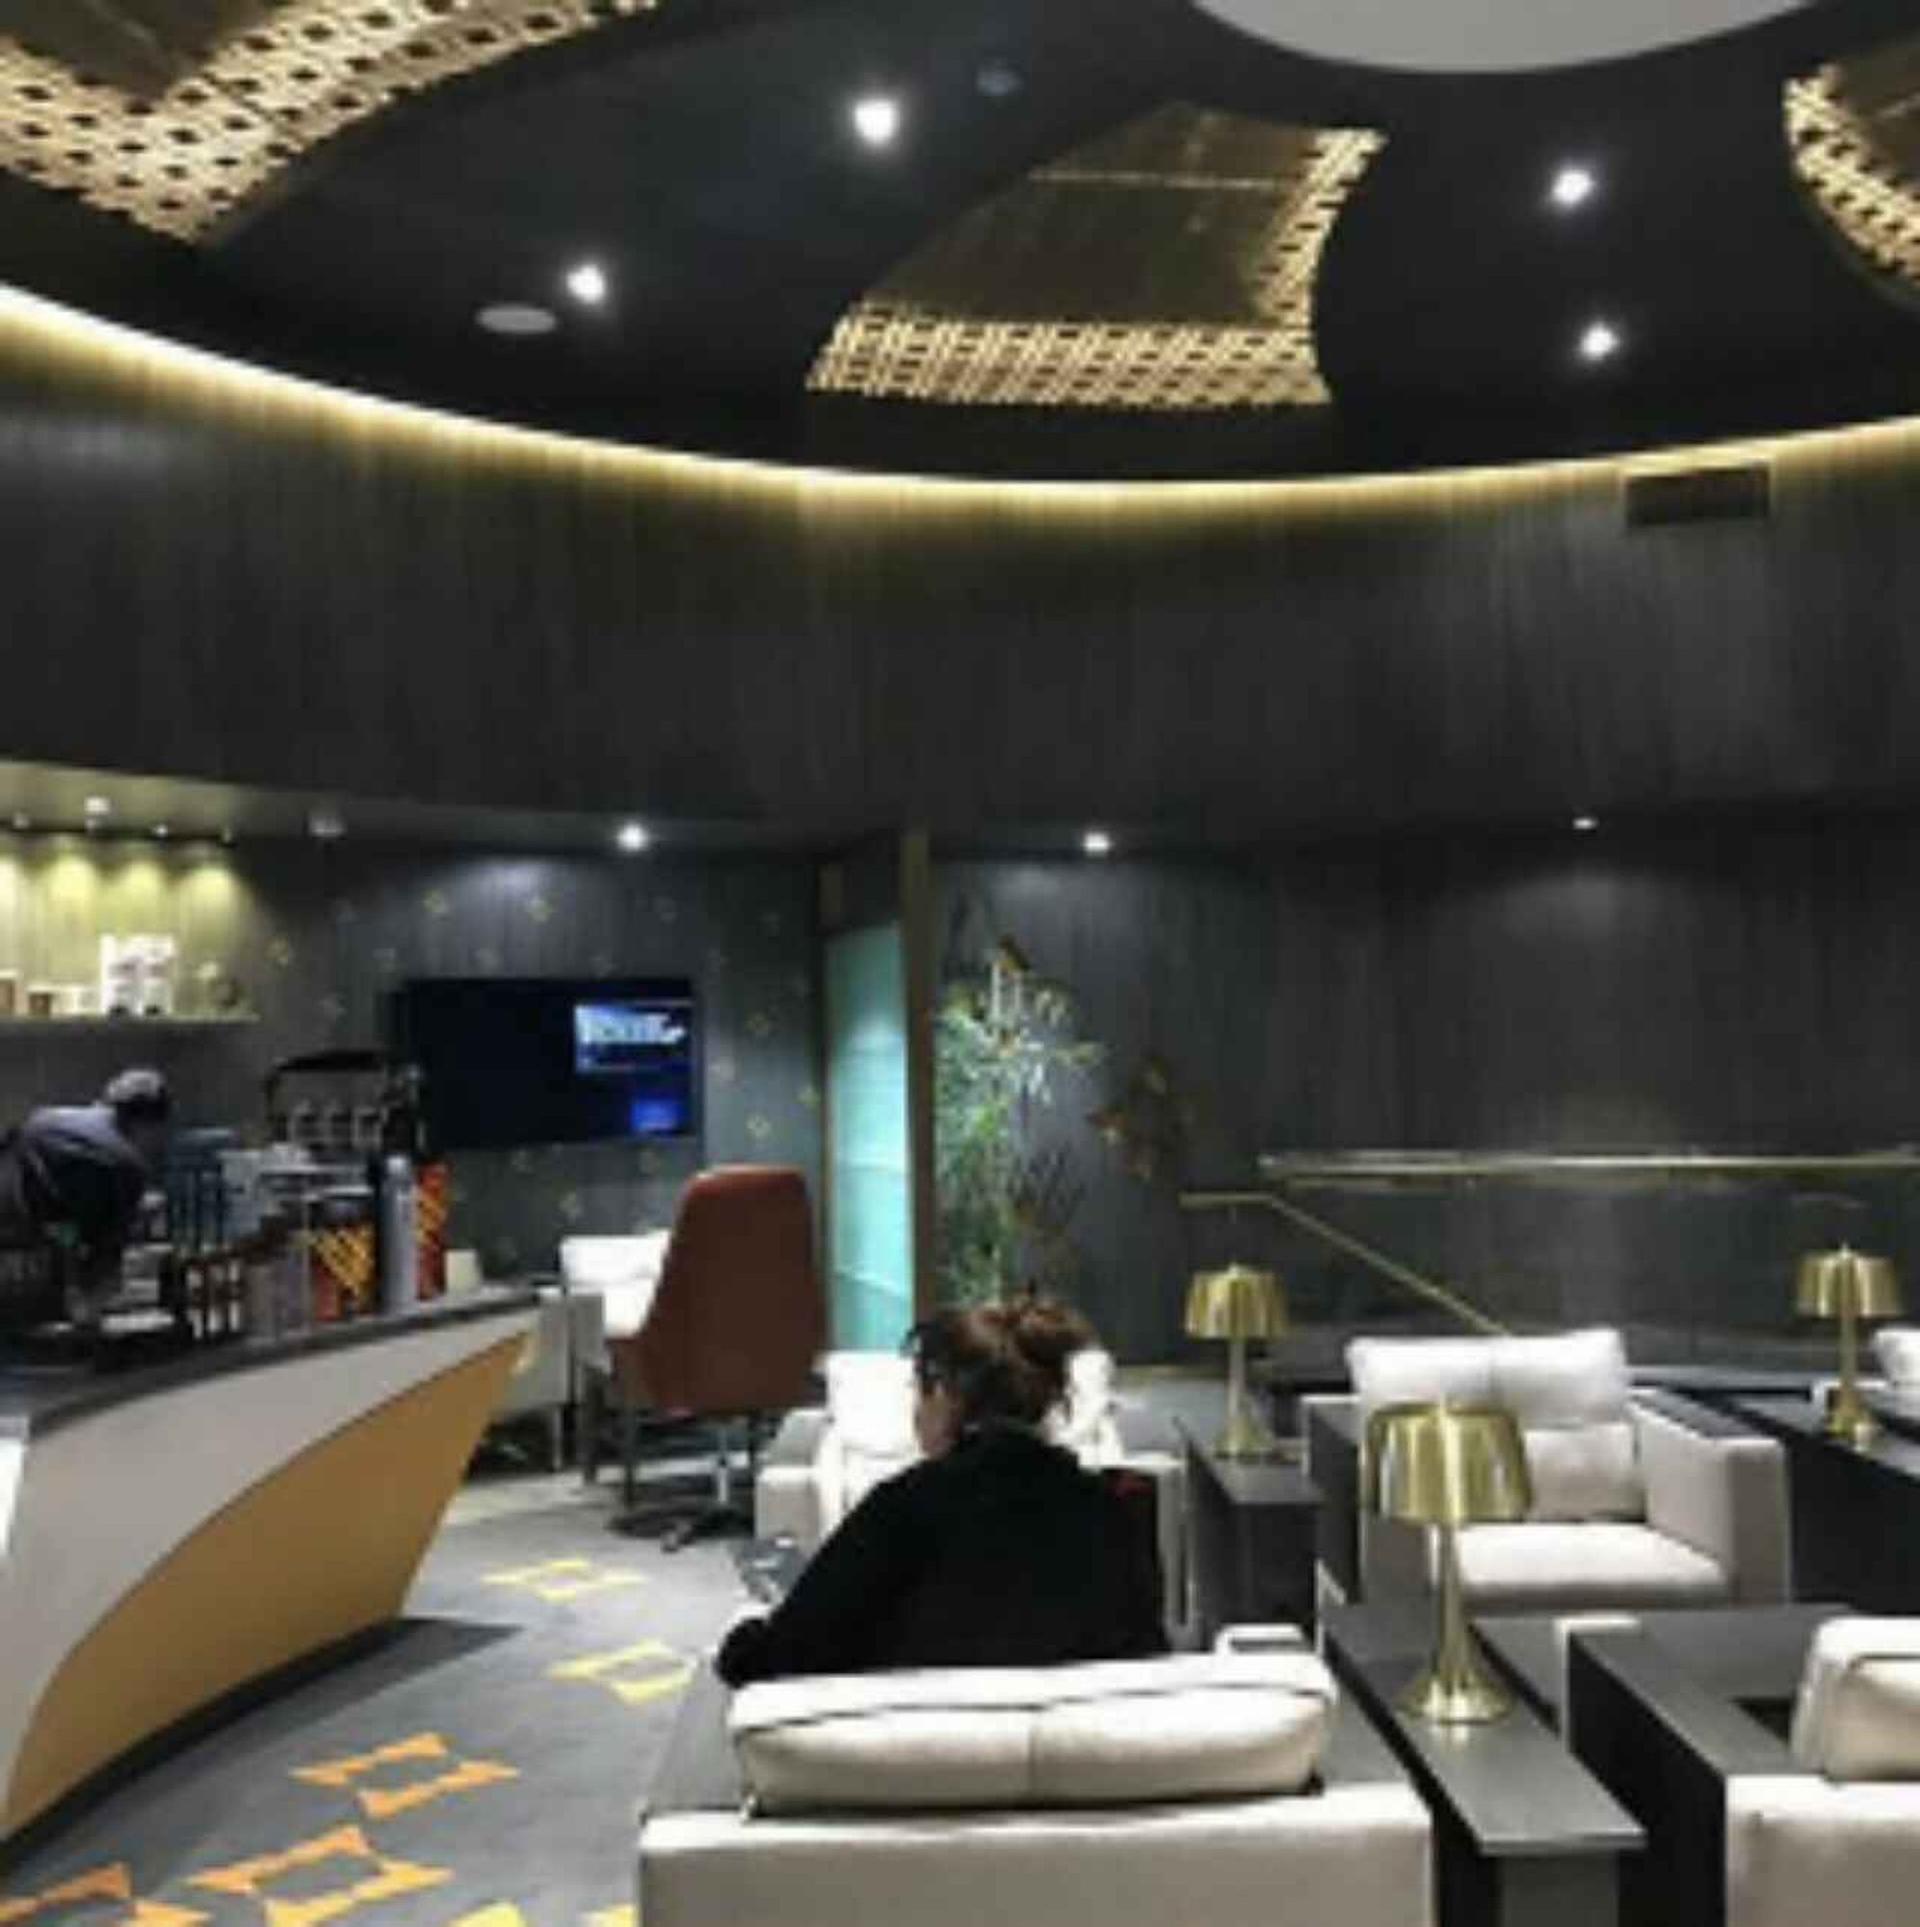 Bank Alfalah Premier Lounge (Domestic) image 1 of 5